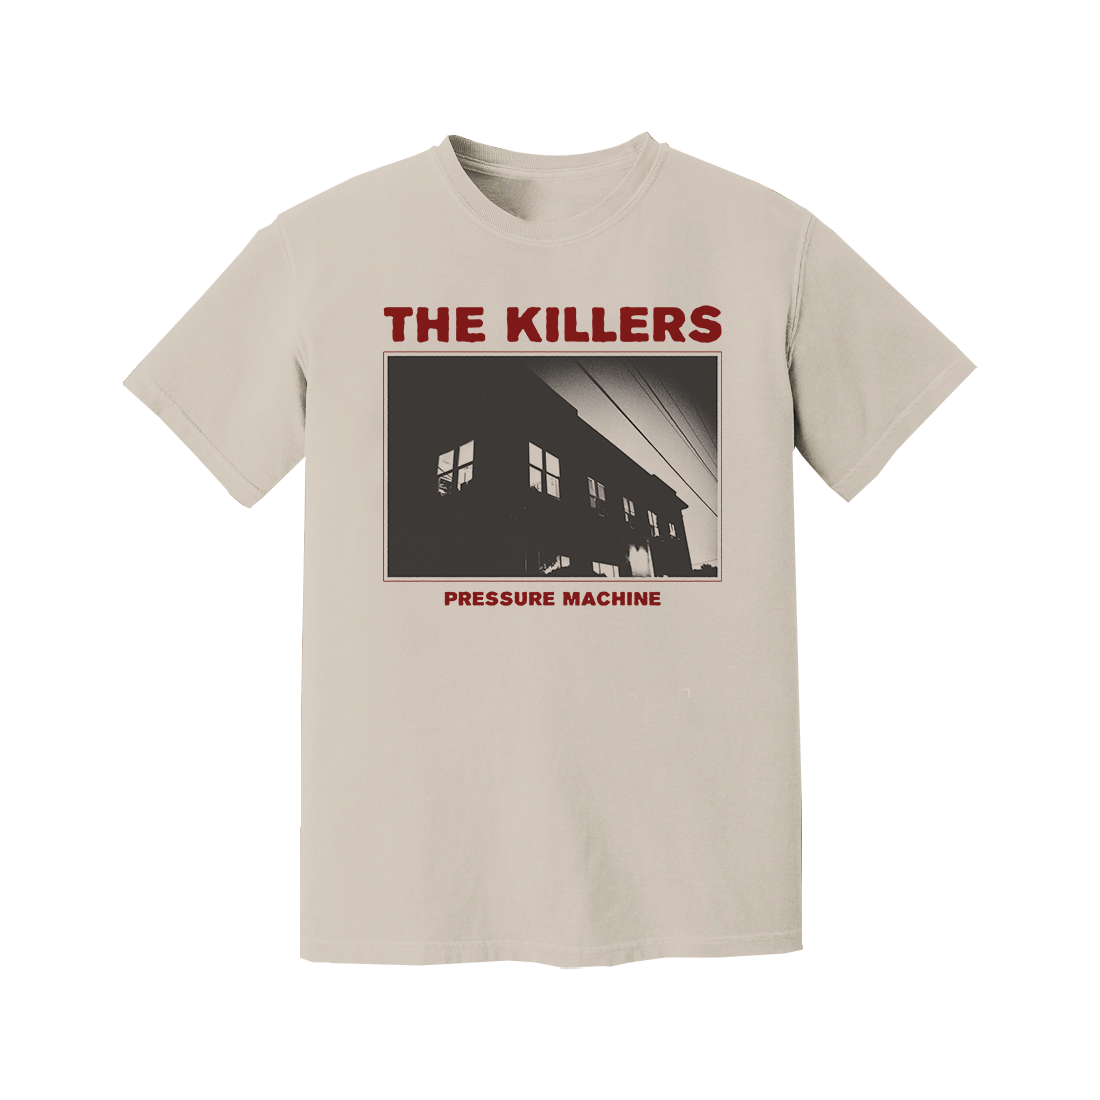 The Killers - Pressure Machine Photo Tee